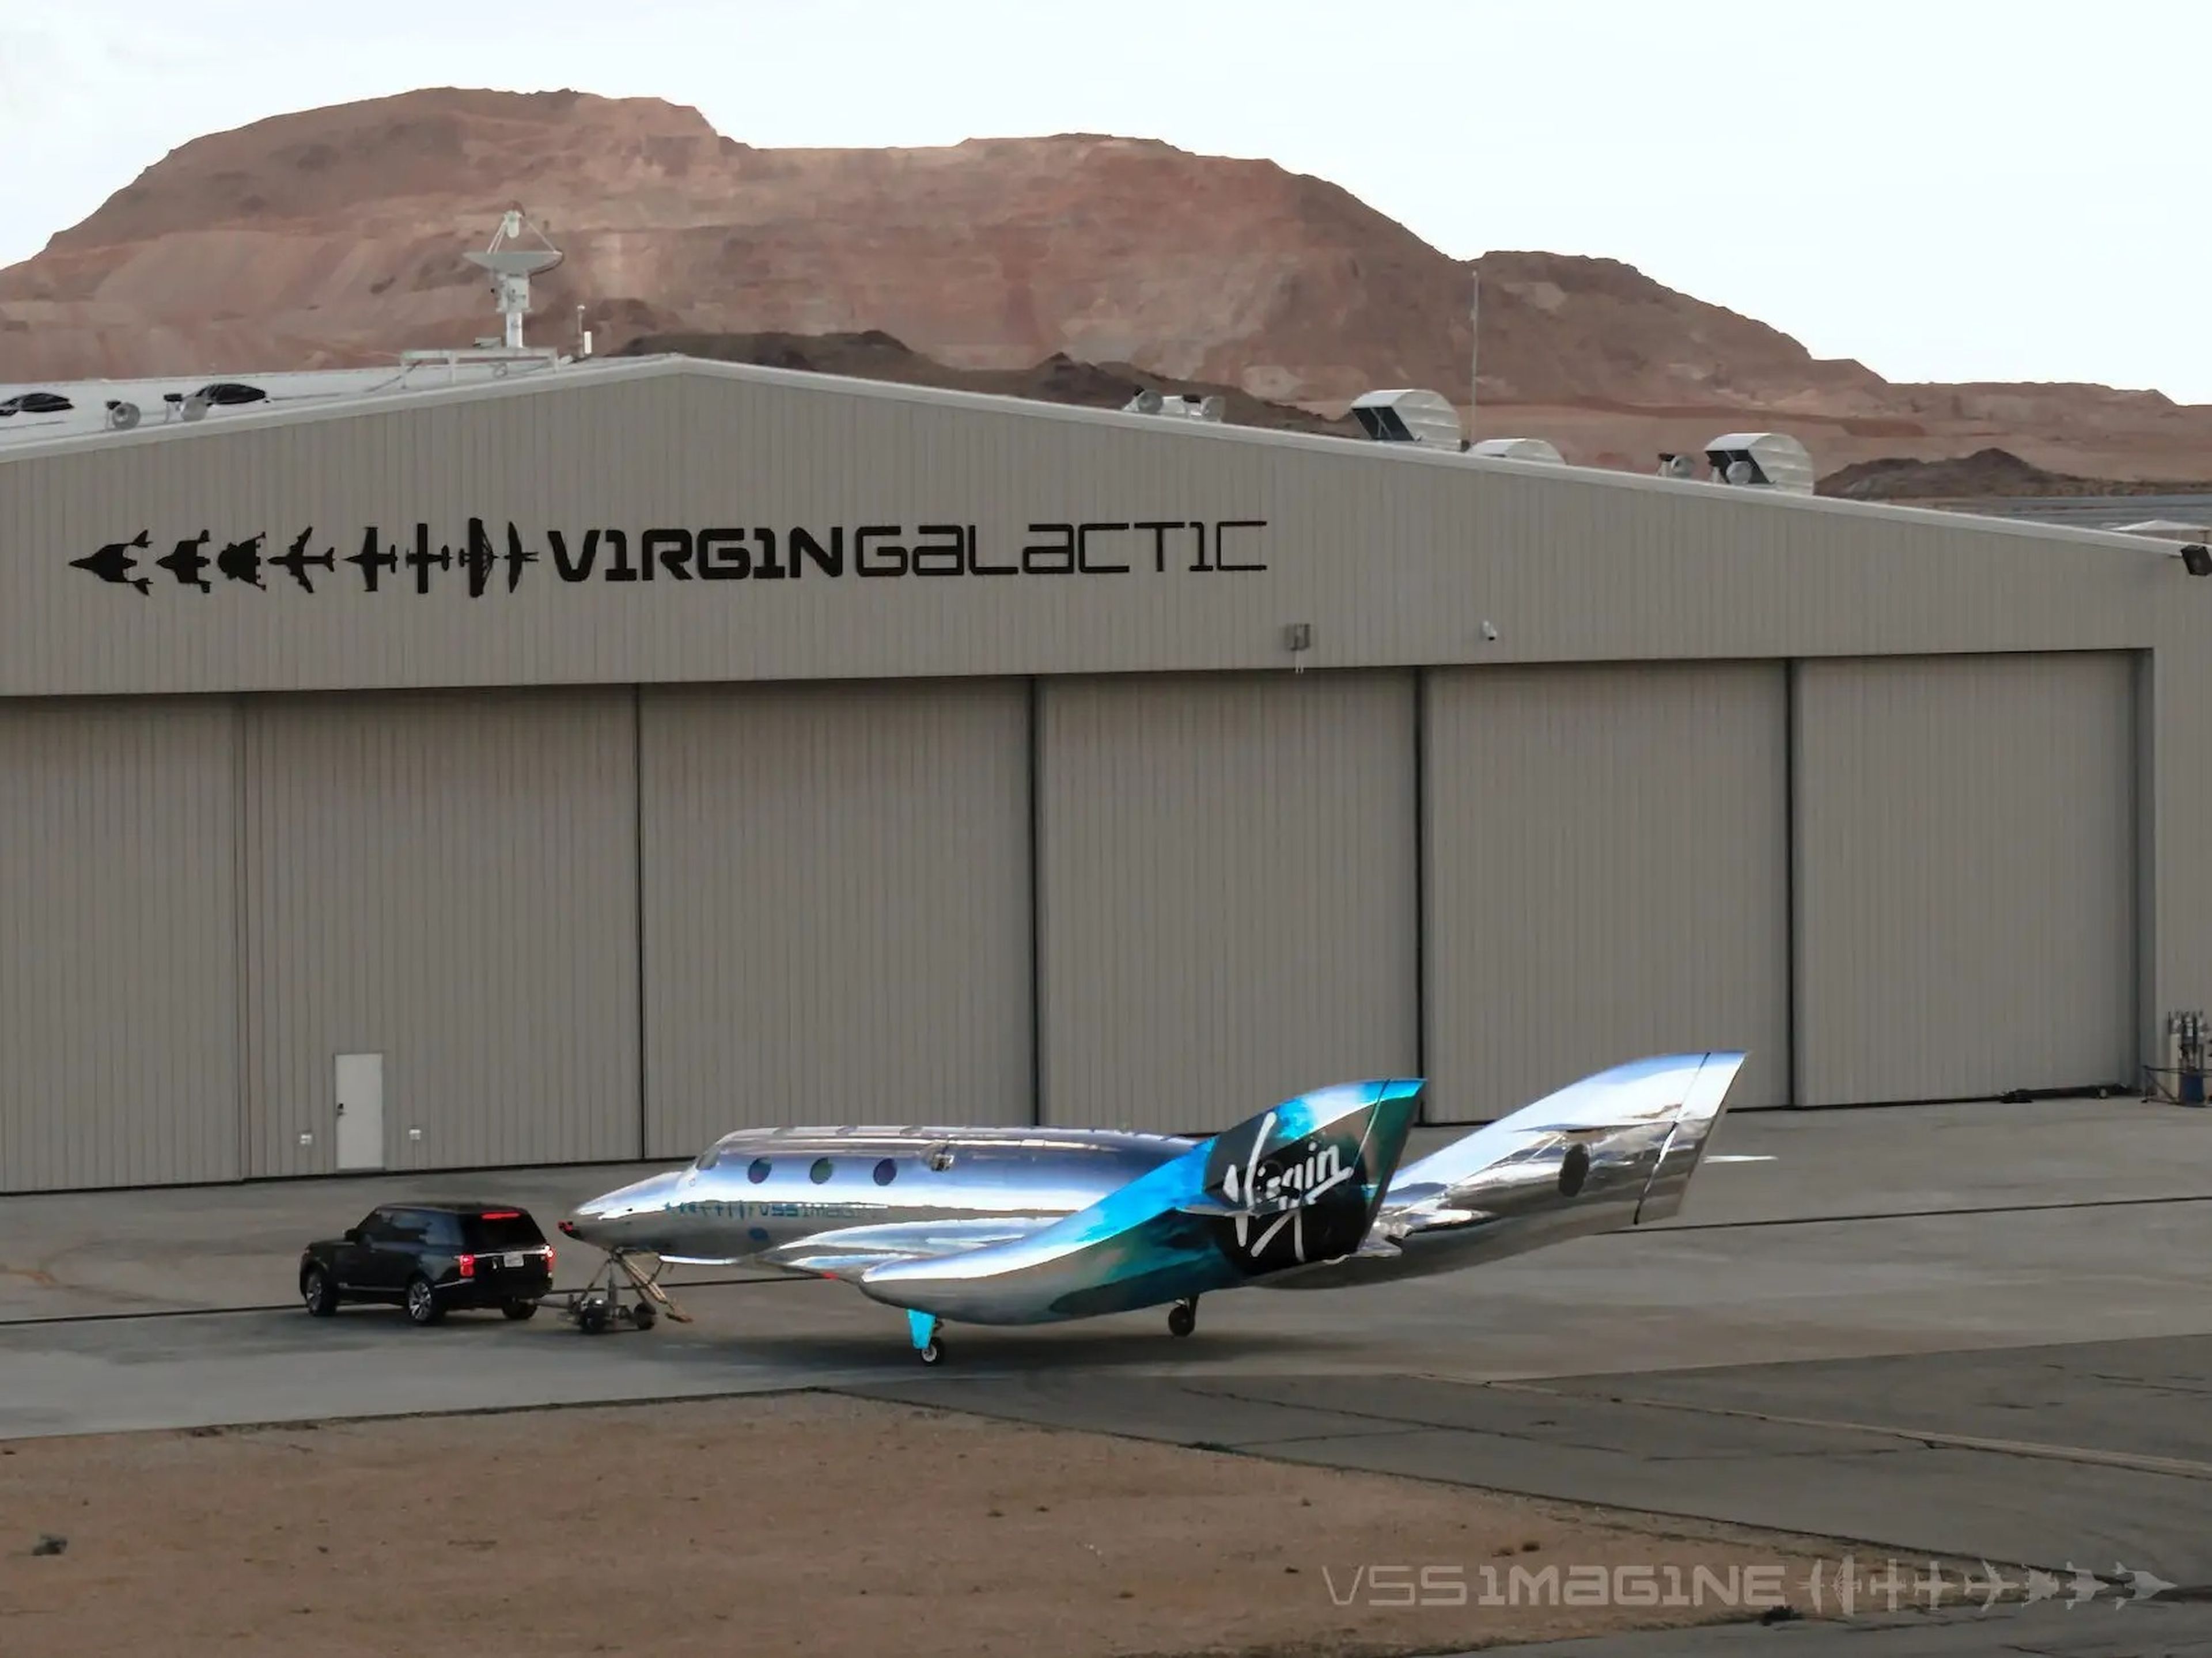 La VSS Imagine es la tercera nave espacial de Virgin Galactic.